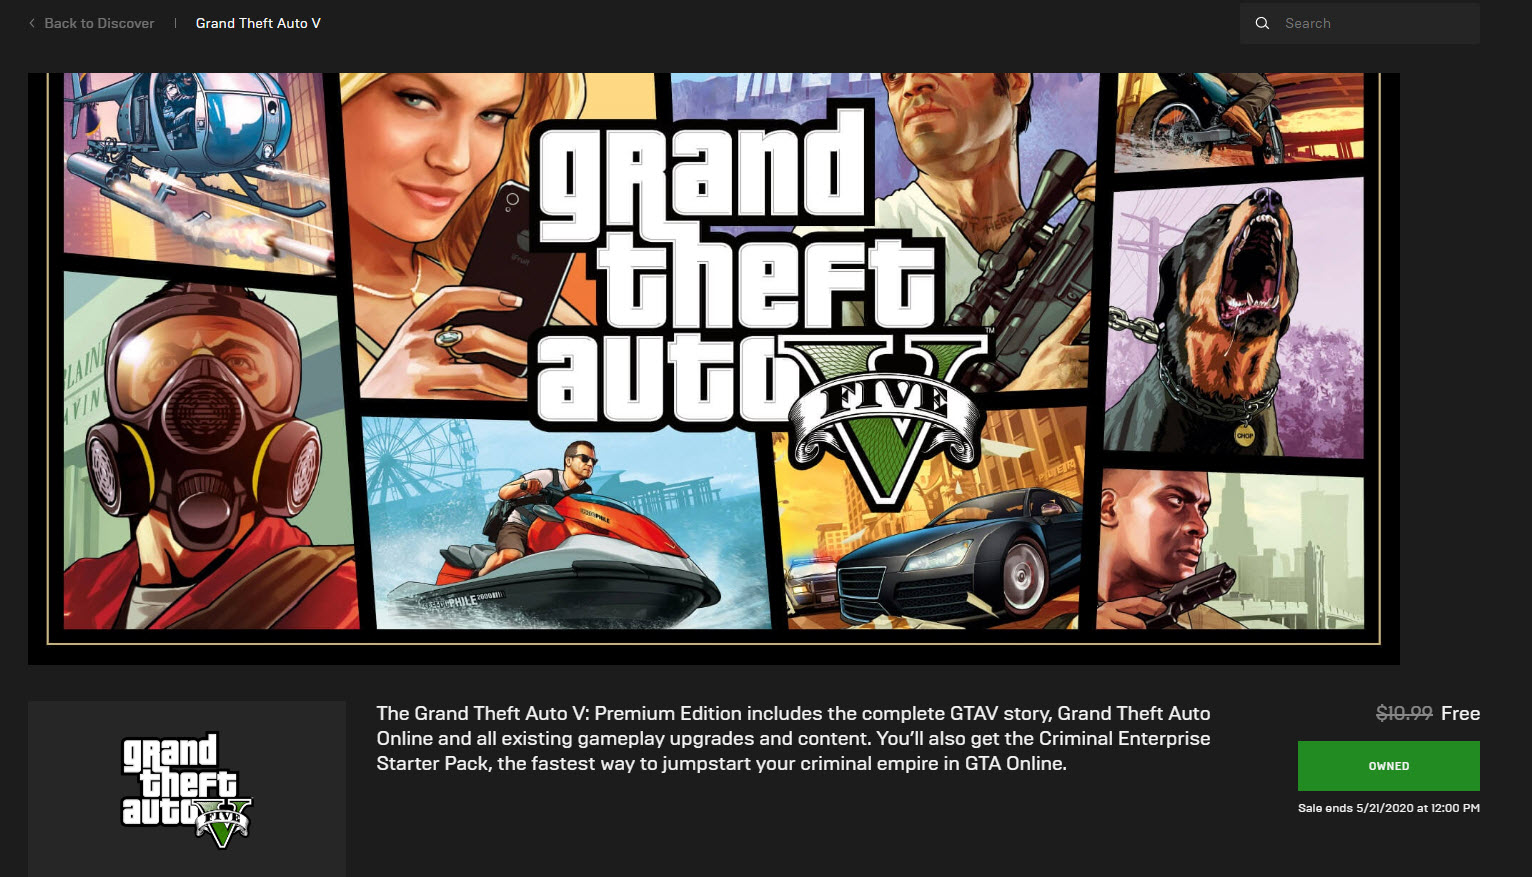 ГТА 5 премиум. Grand Theft auto v Epic games. ГТА 5 премиум эдишн. ГТА 5 ЭПИК геймс. Epic games код 134